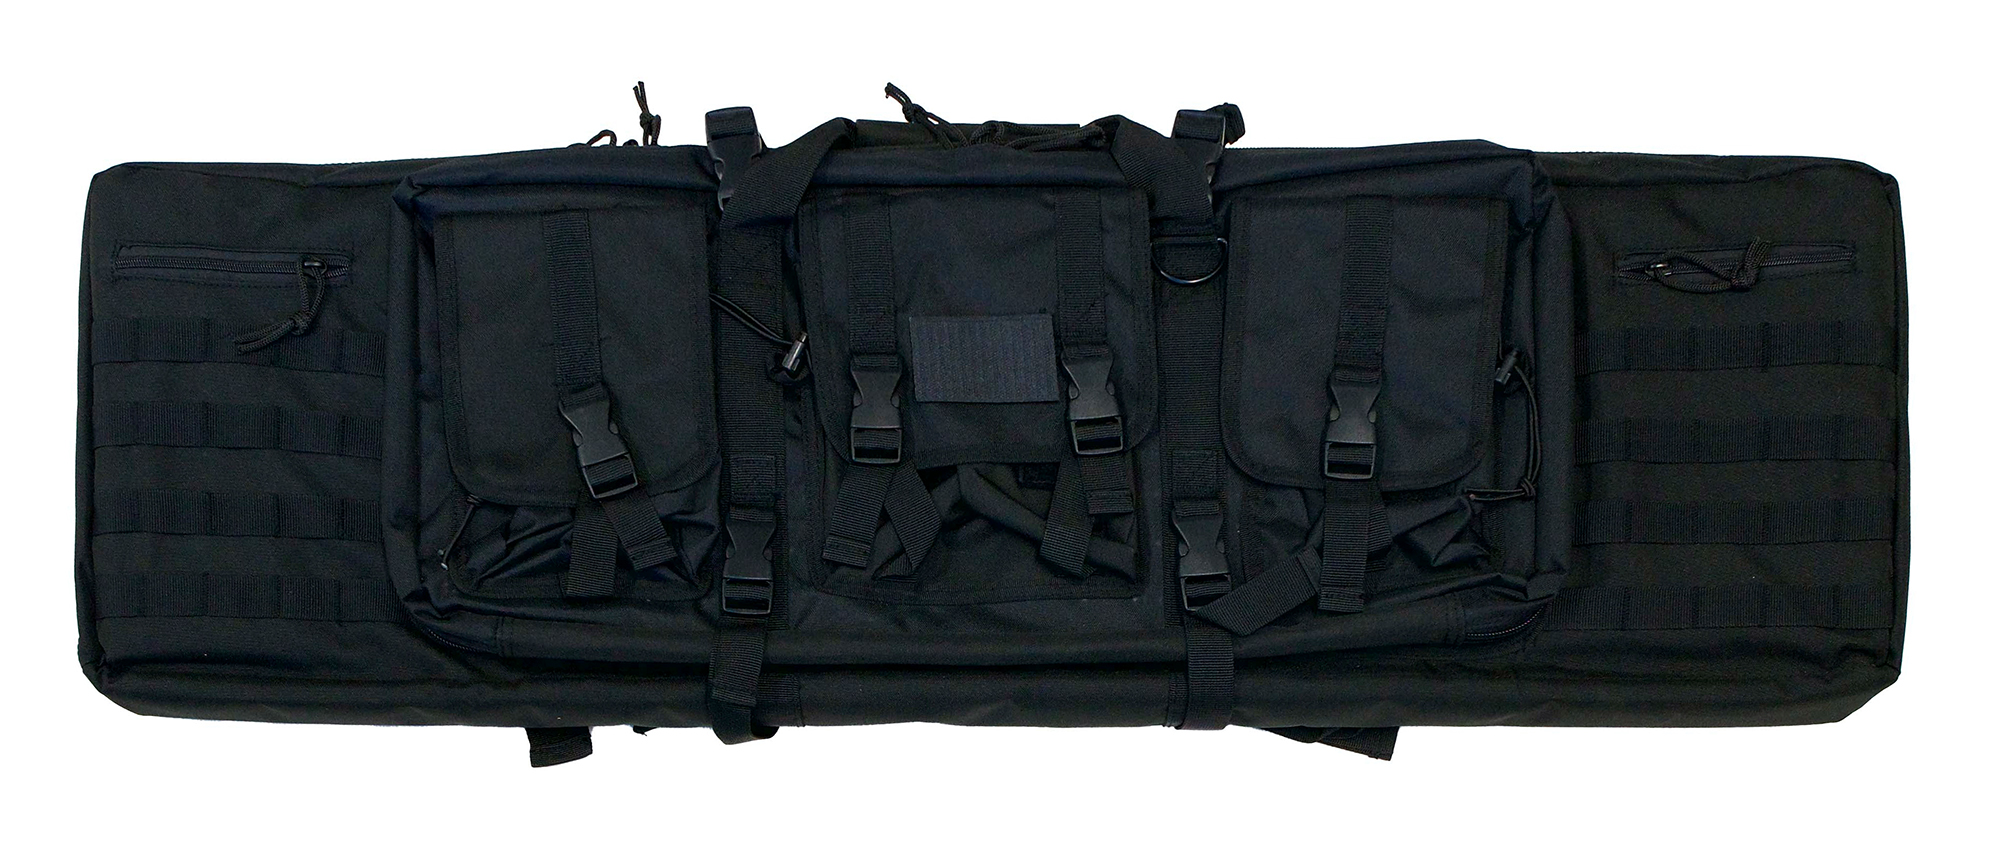 Valken 42 Waffentasche Single Rifle Range Case Futteral, oliv